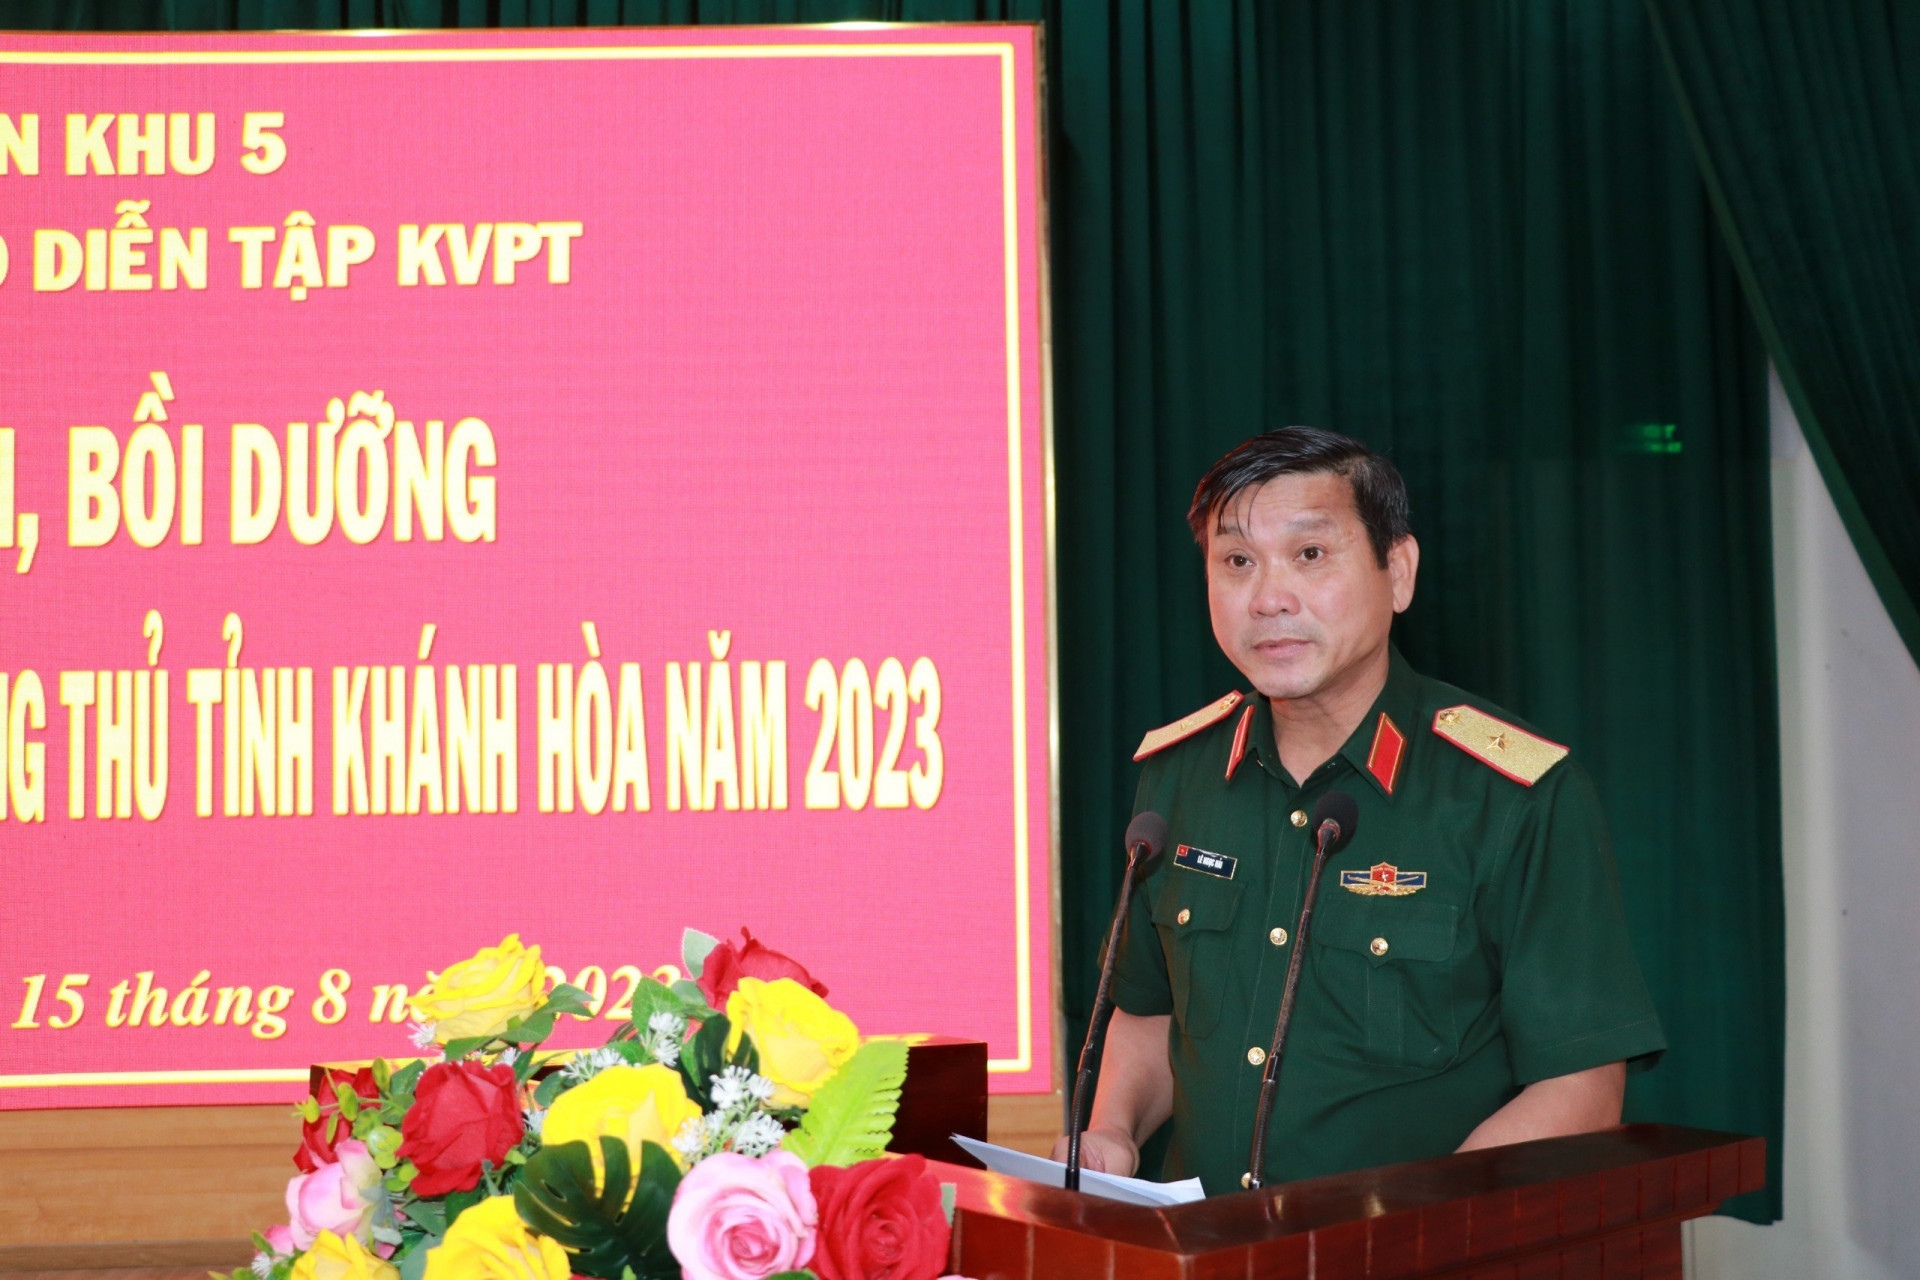 Thiếu tướng Lê Ngọc Hải phát biểu khai mạc hội nghị.